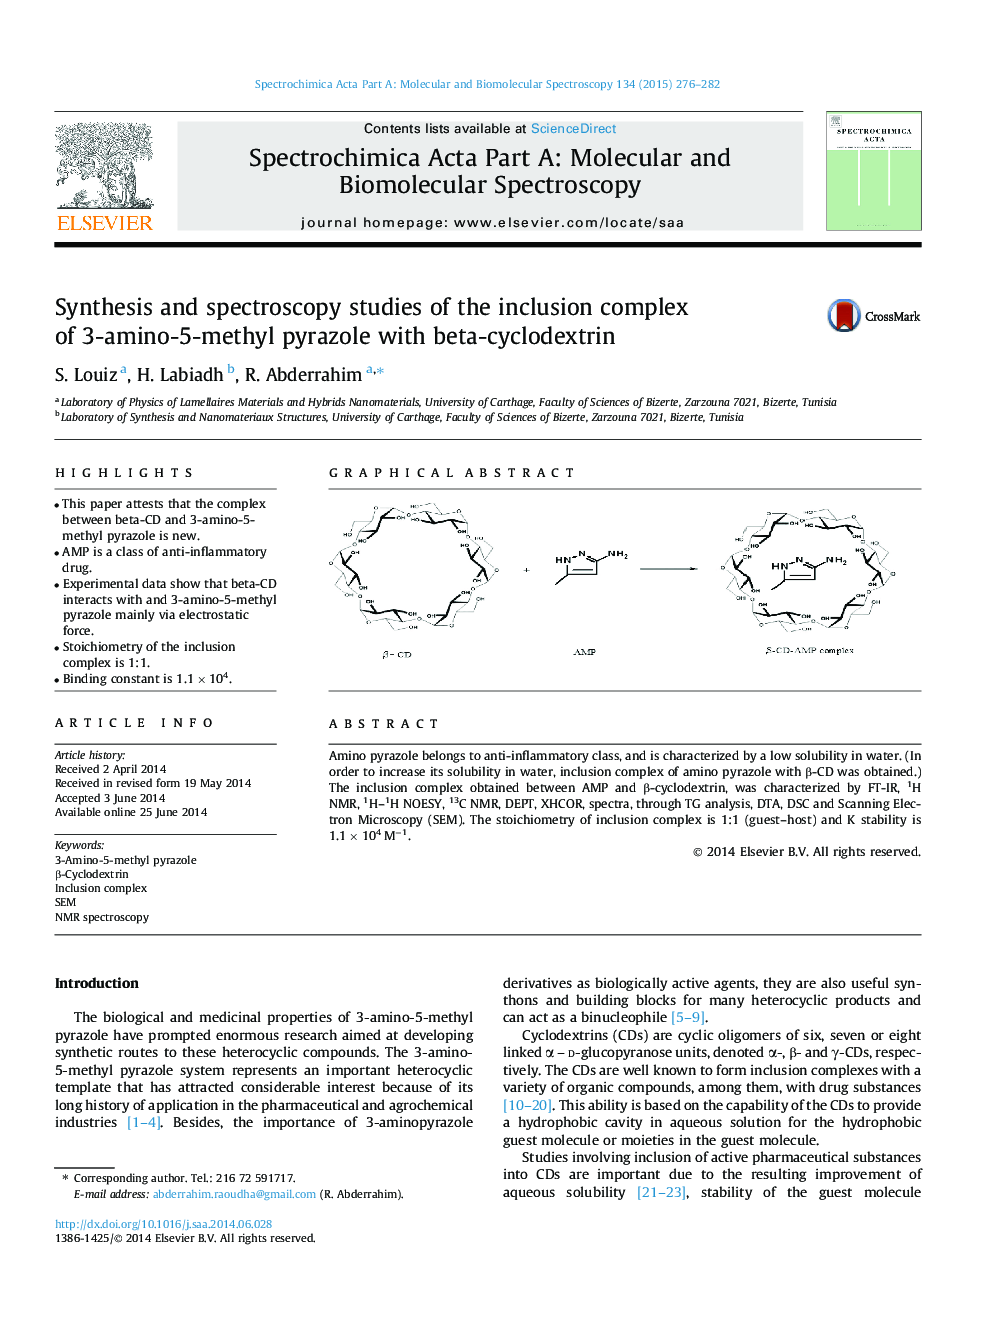 مطالعات سنتز و اسپکتروسکوپی مجموعه پیچیدگی 3-آمینو-5-متیل پریازول با بتا-سیکلوکودکسترین 